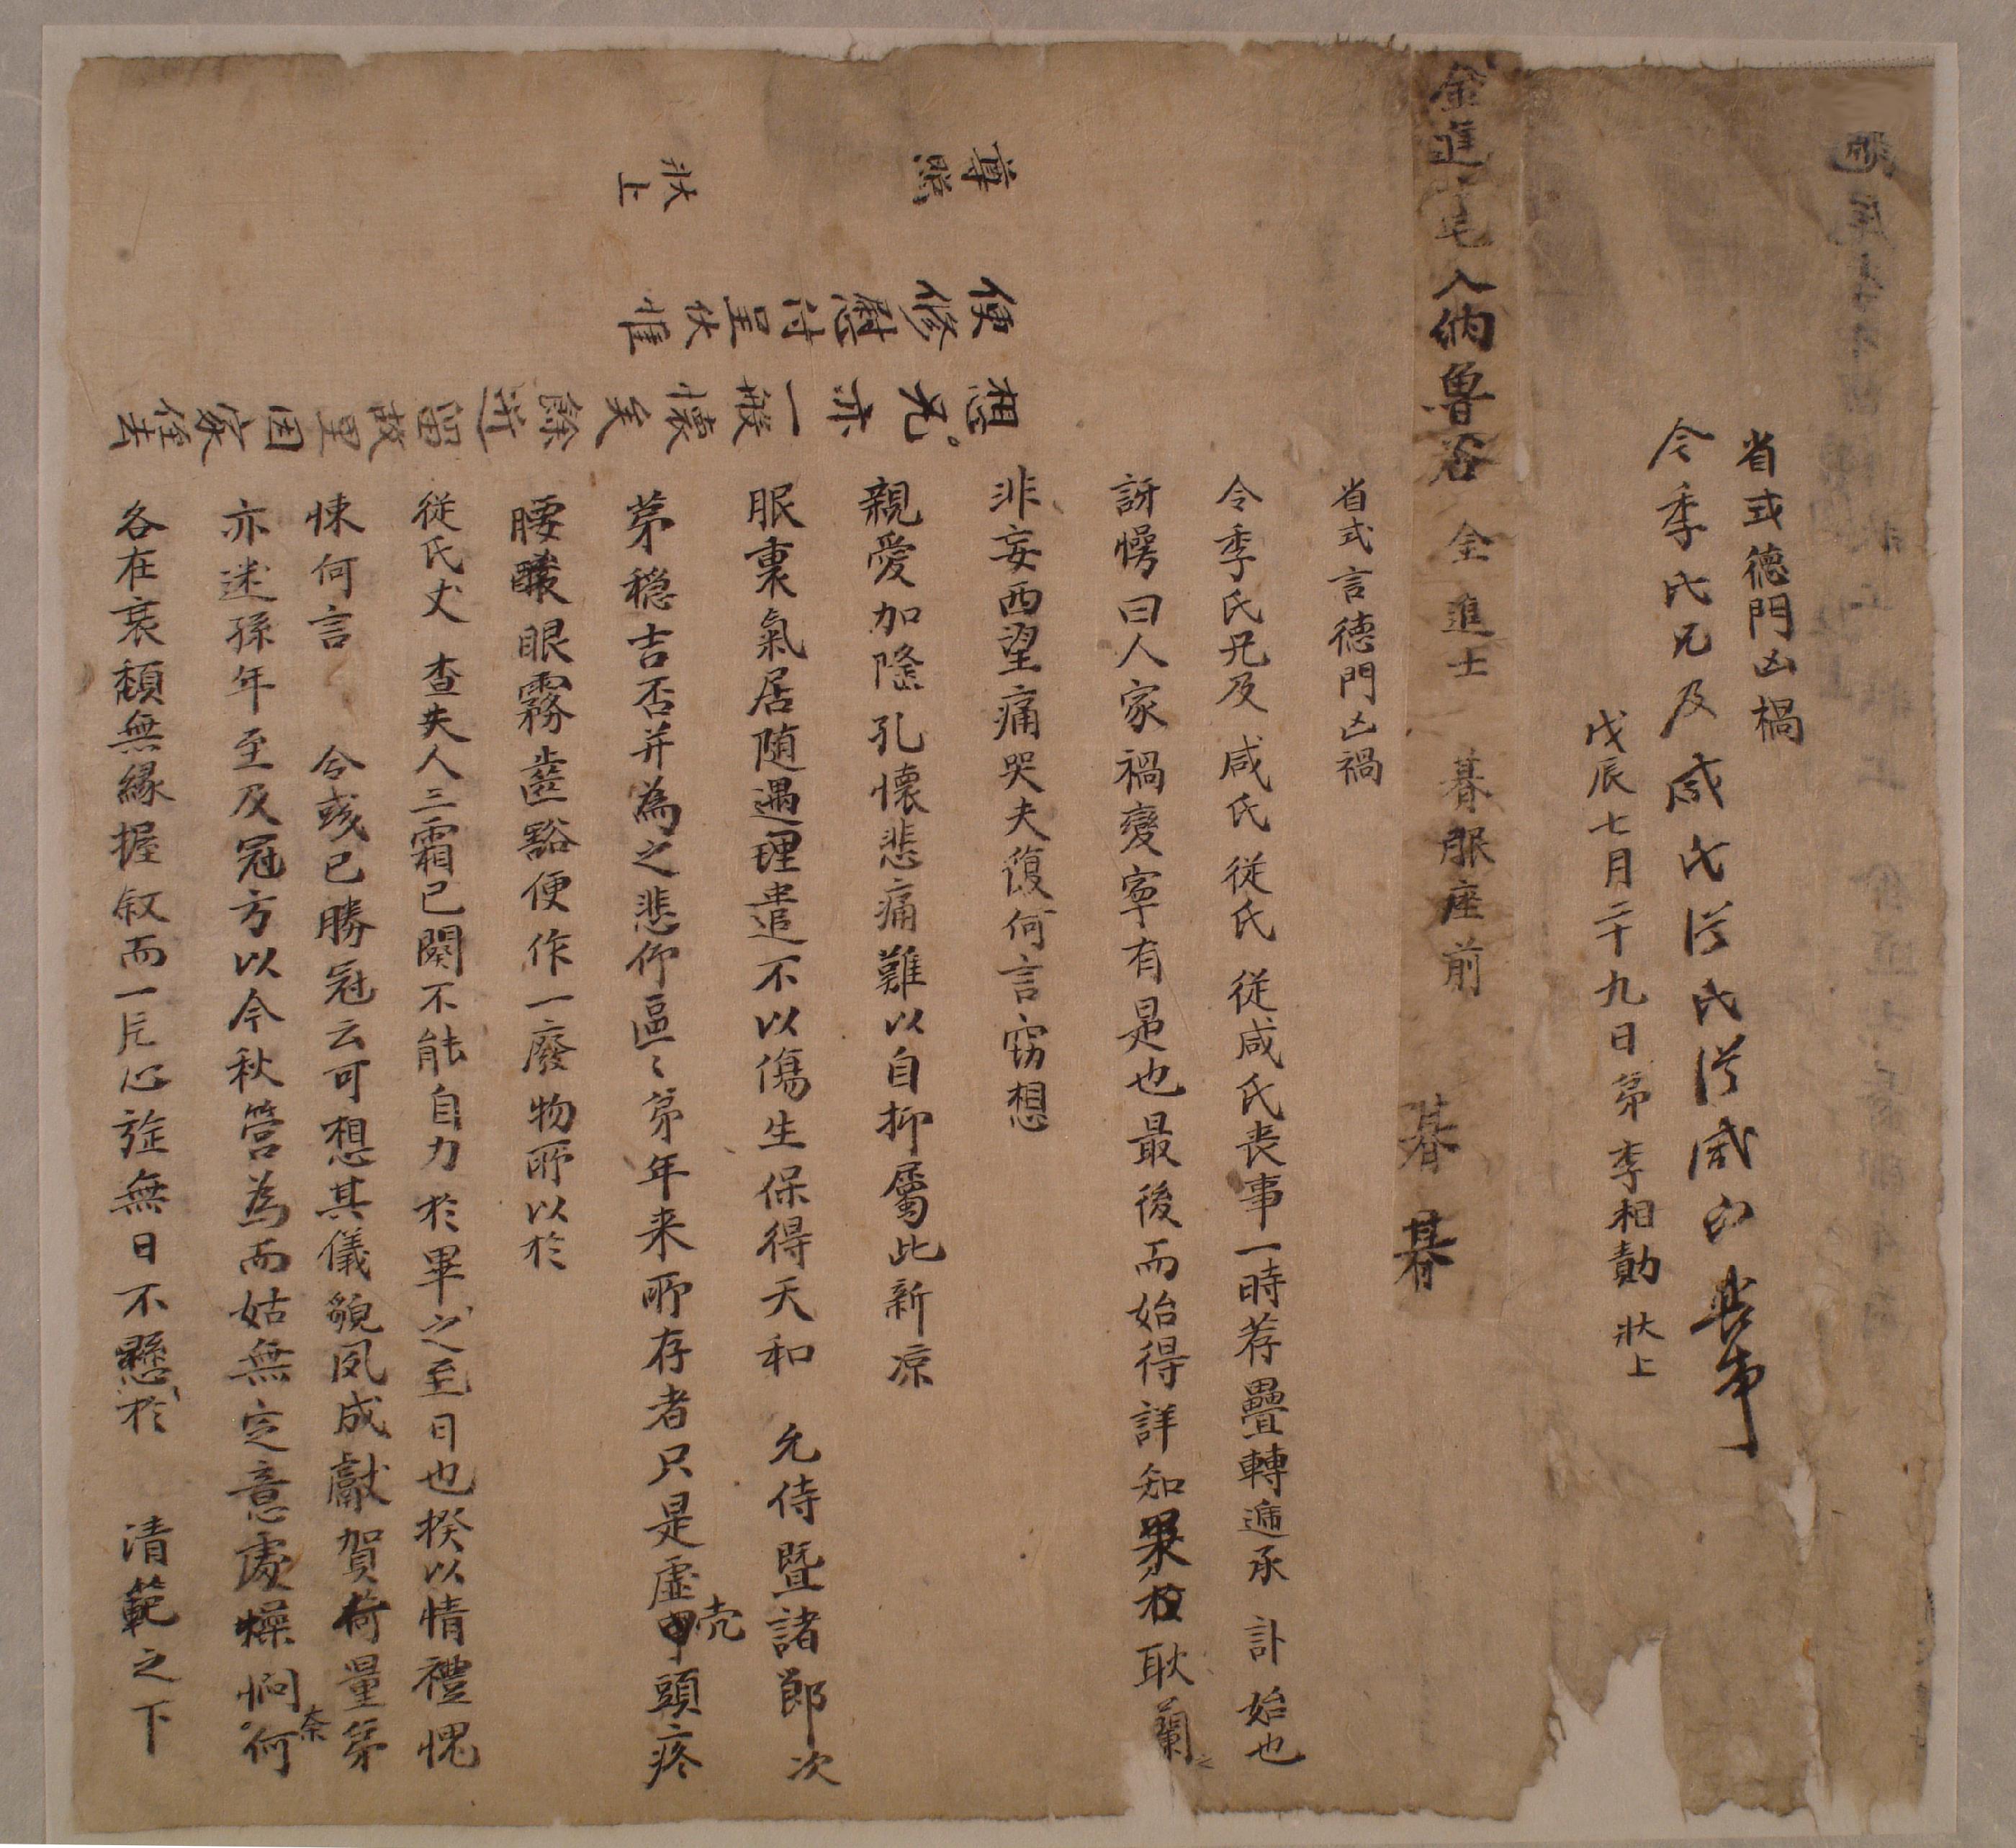 이상적(李相勣)이 무진년에 겹 상사(喪事)를 당한 노곡(魯谷) 김진사(金進士)에게 보낸 편지